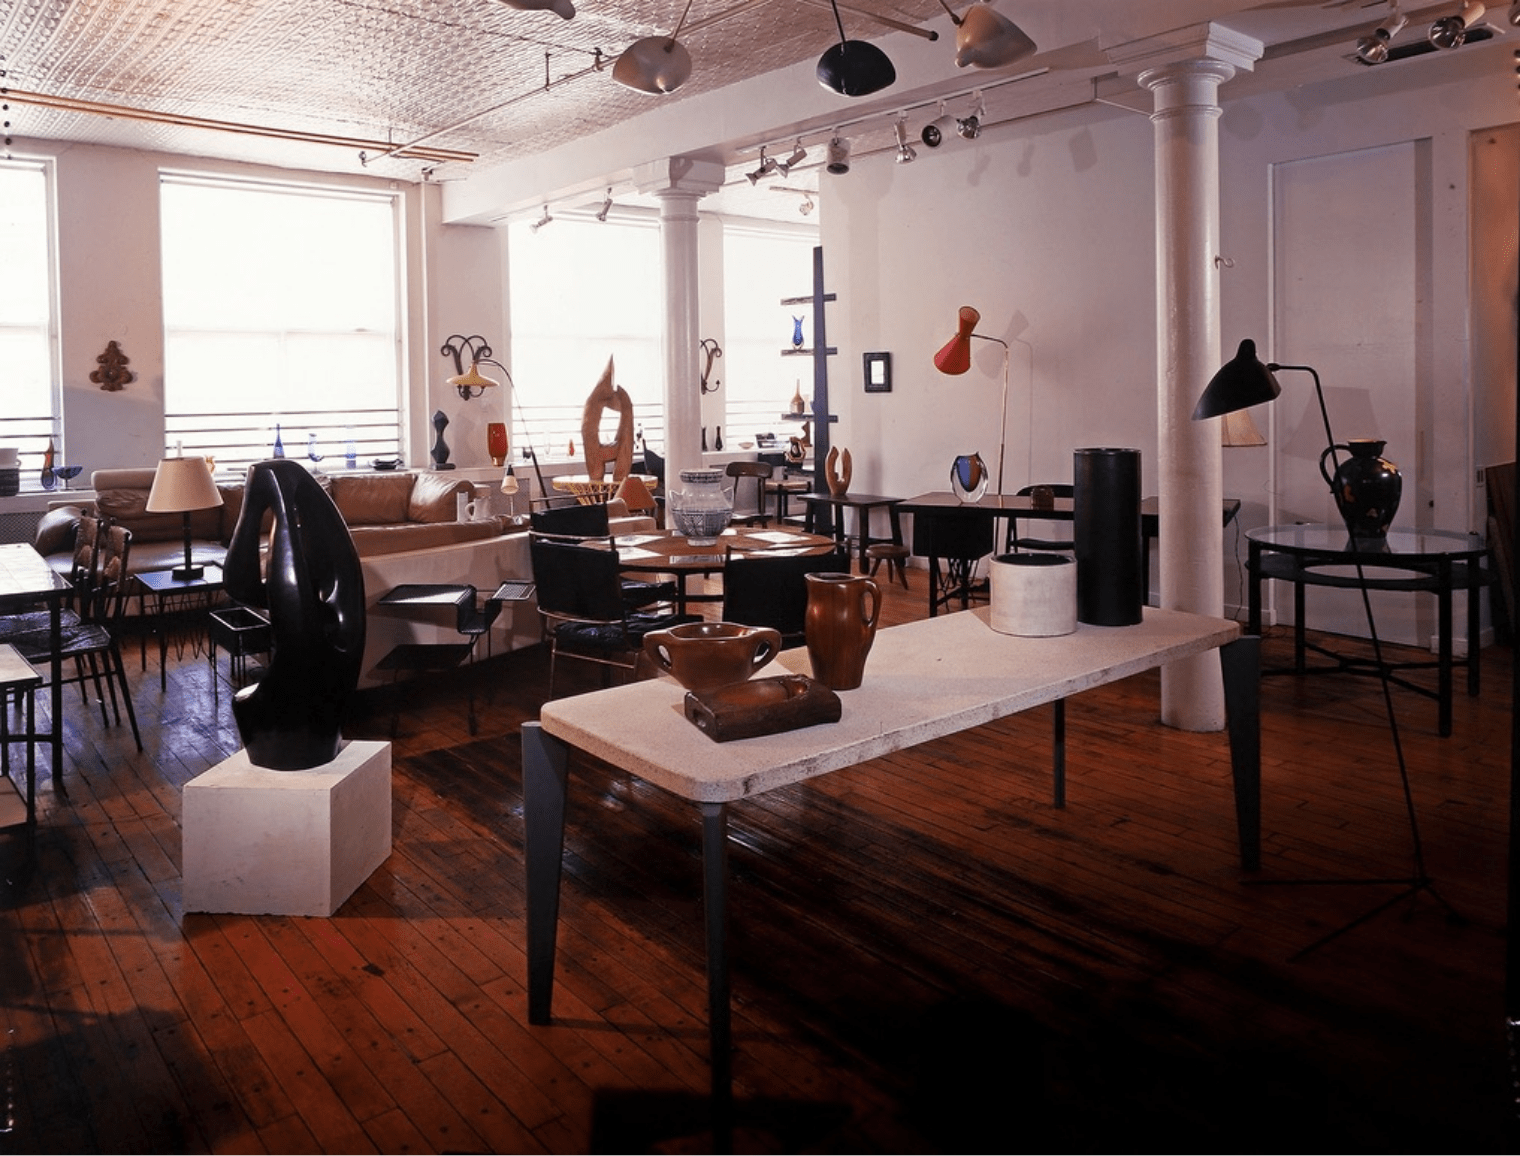 Galerie de Beyrie, New York, 1998 : Georges Jouve, Jean Prouvé, Alexandre Noll, Serge Mouille